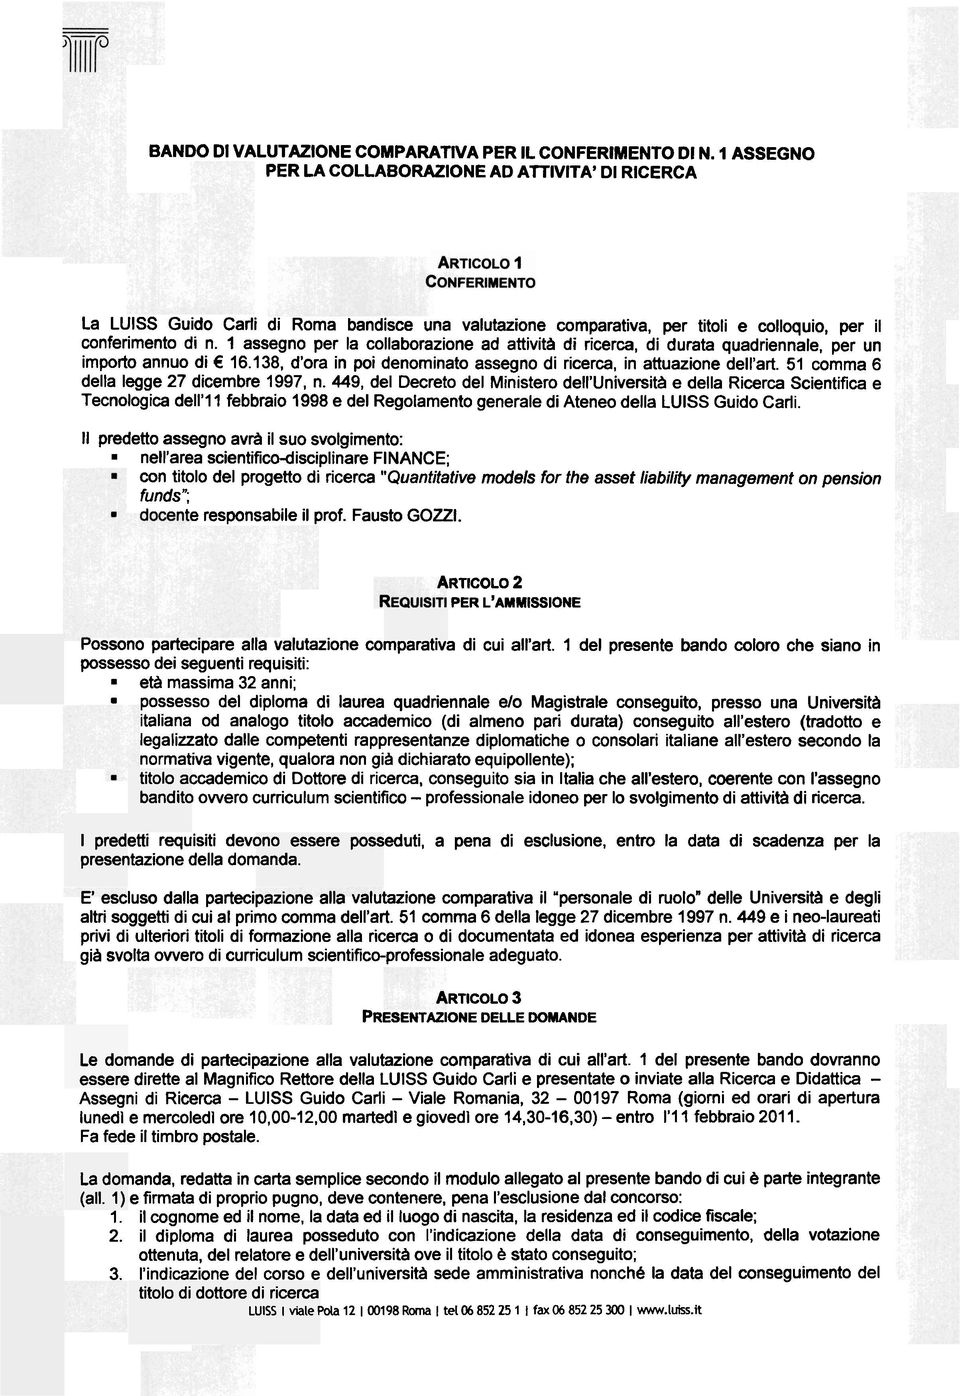 attuazione dell'art 51 comma 6 della legge 27 dicembre 1997, n 449, del Decreto del Ministero dell'università e della Ricerca Scientifica e Tecnologica dell'l l febbraio 1998 e del Regolamento